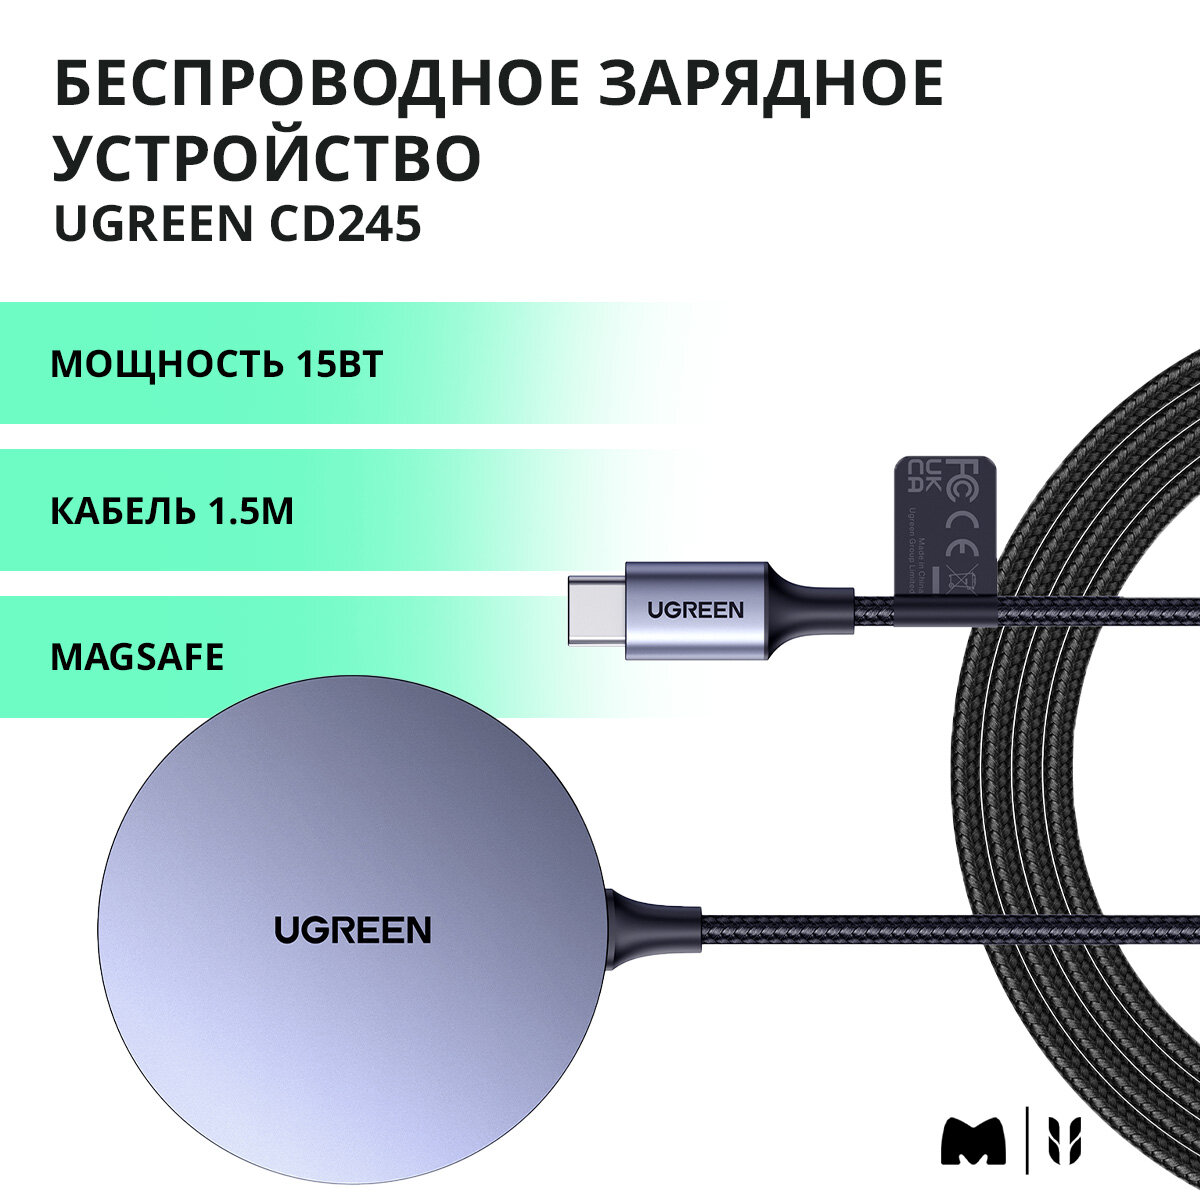 Магнитное беспроводное зарядное устройство 15Вт UGREEN CD245 / Magsafe / Кабель USB-C 1,5м / цвет серый космос (30233)